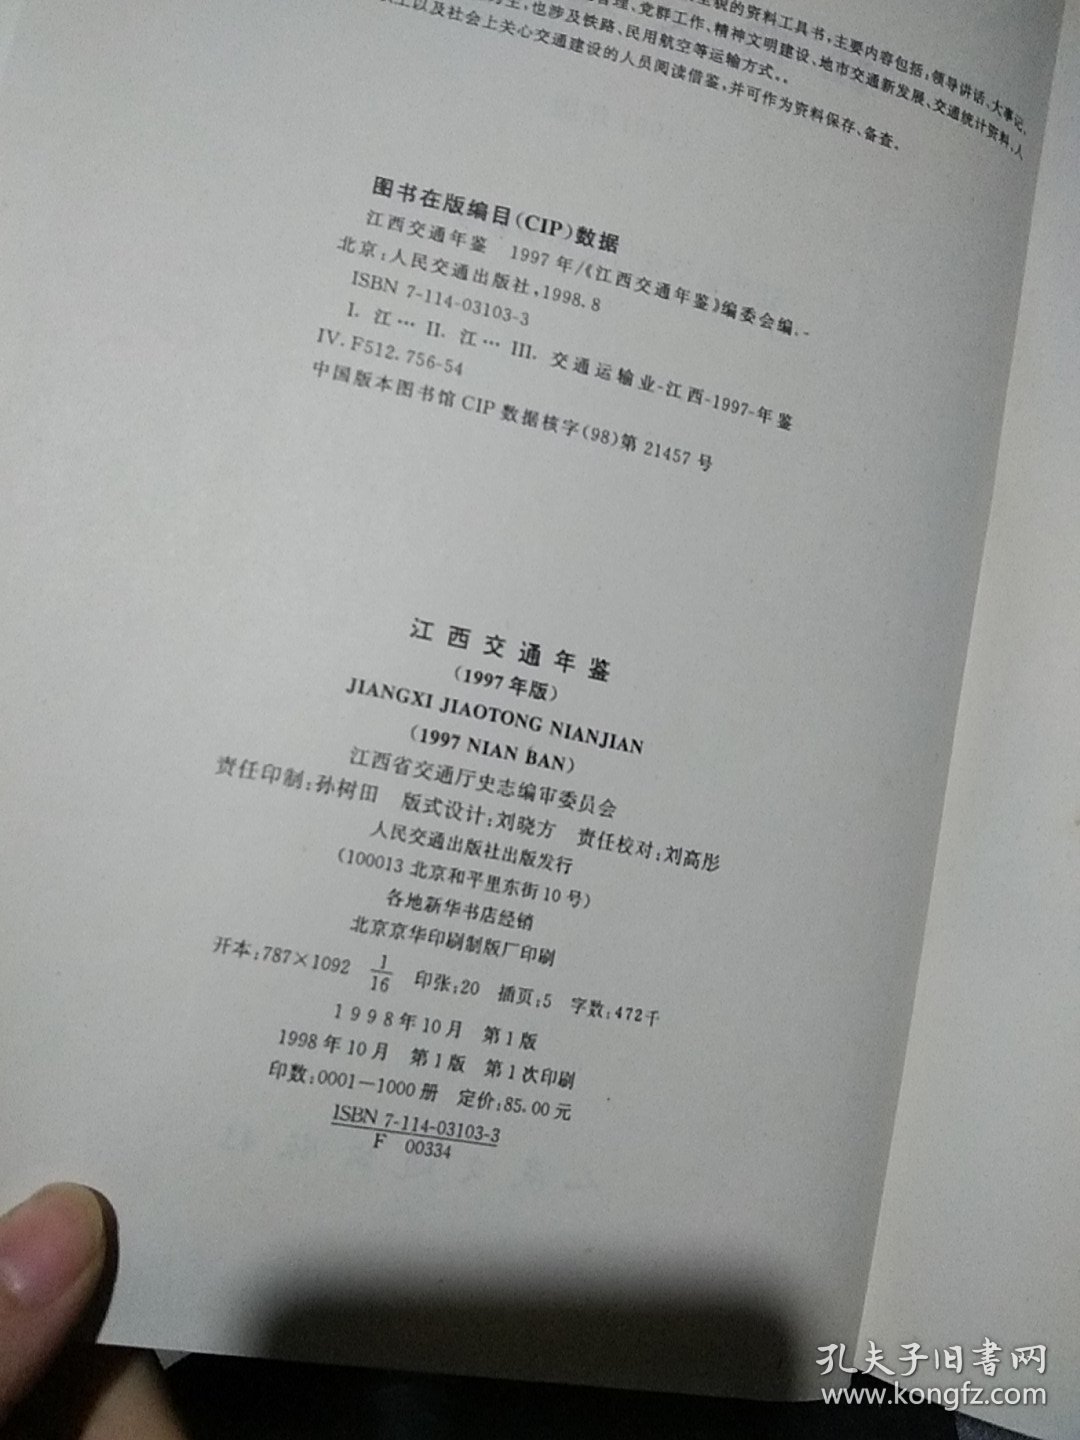 江西交通年鉴 1997年版